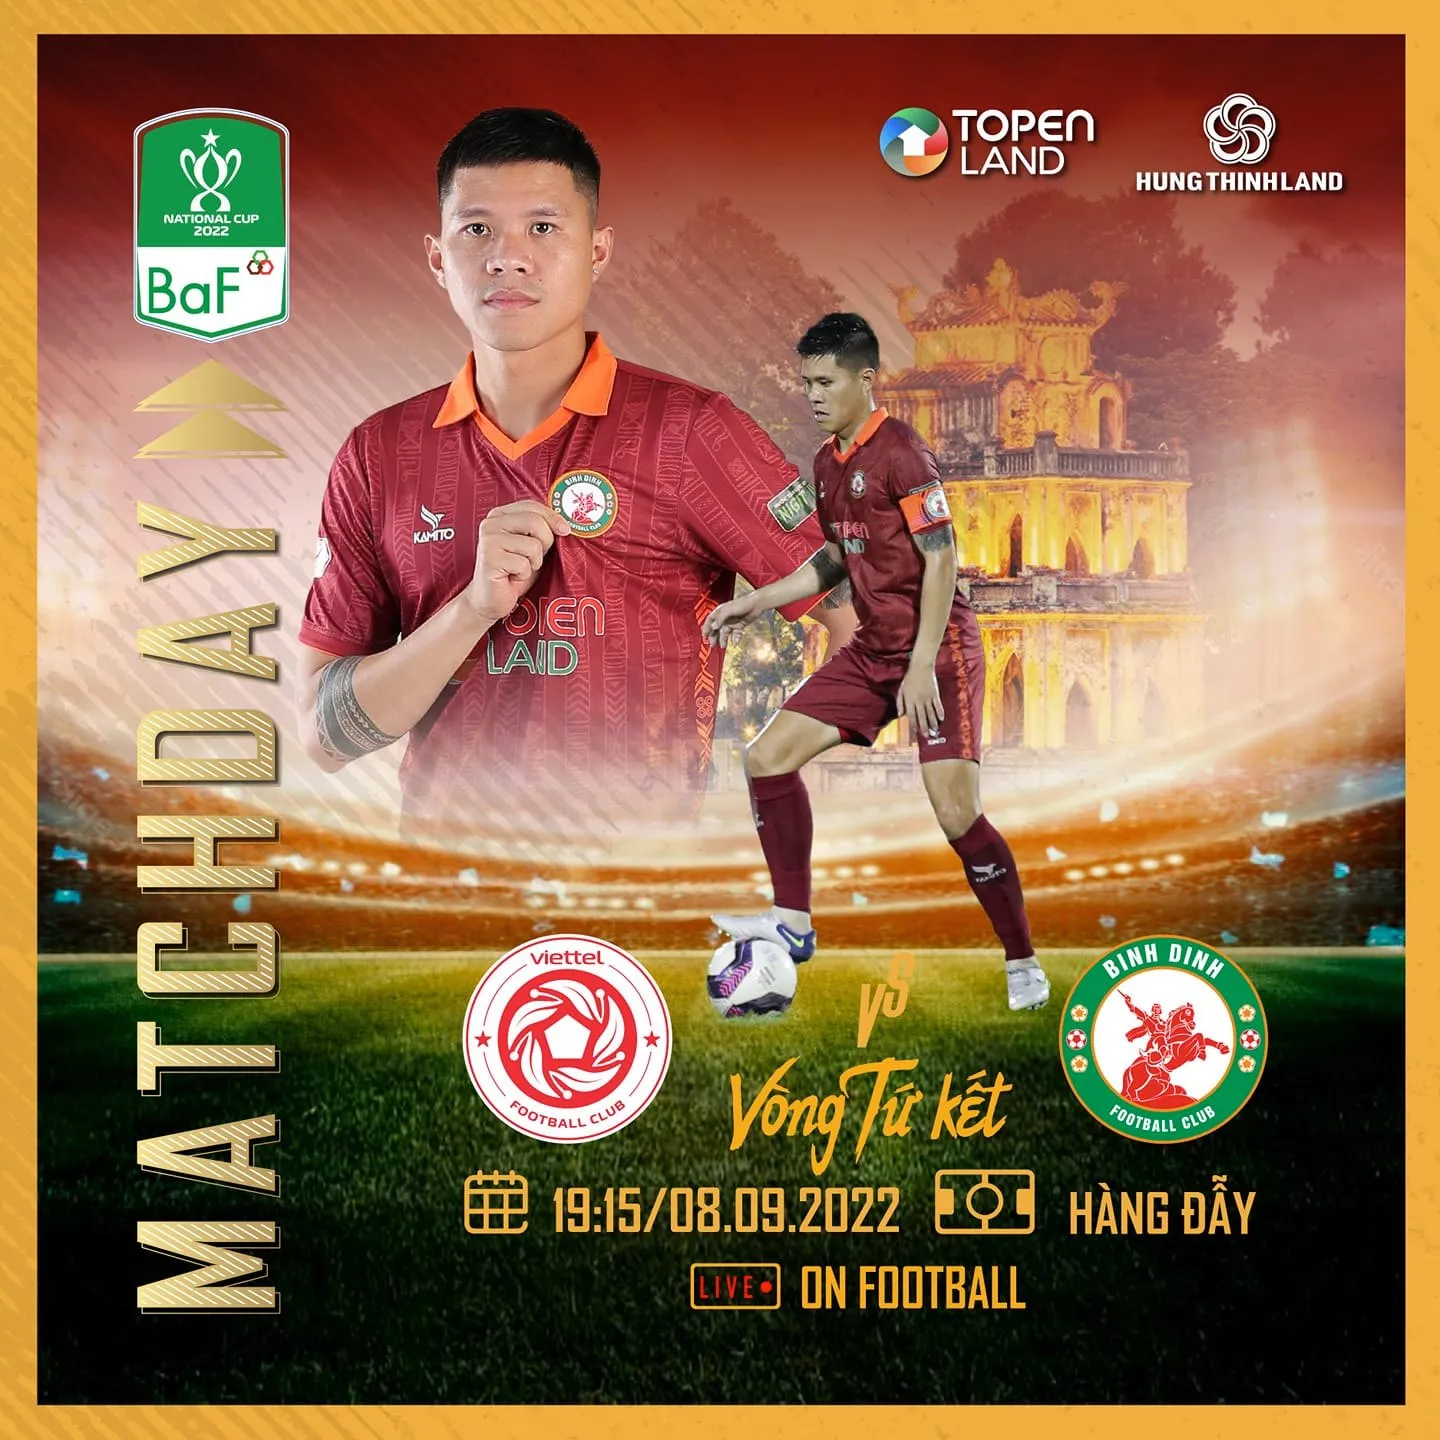 Trực tiếp Viettel vs Bình Định, link xem trực tiếp Viettel vs Bình Định: 19h15 08/09/2022